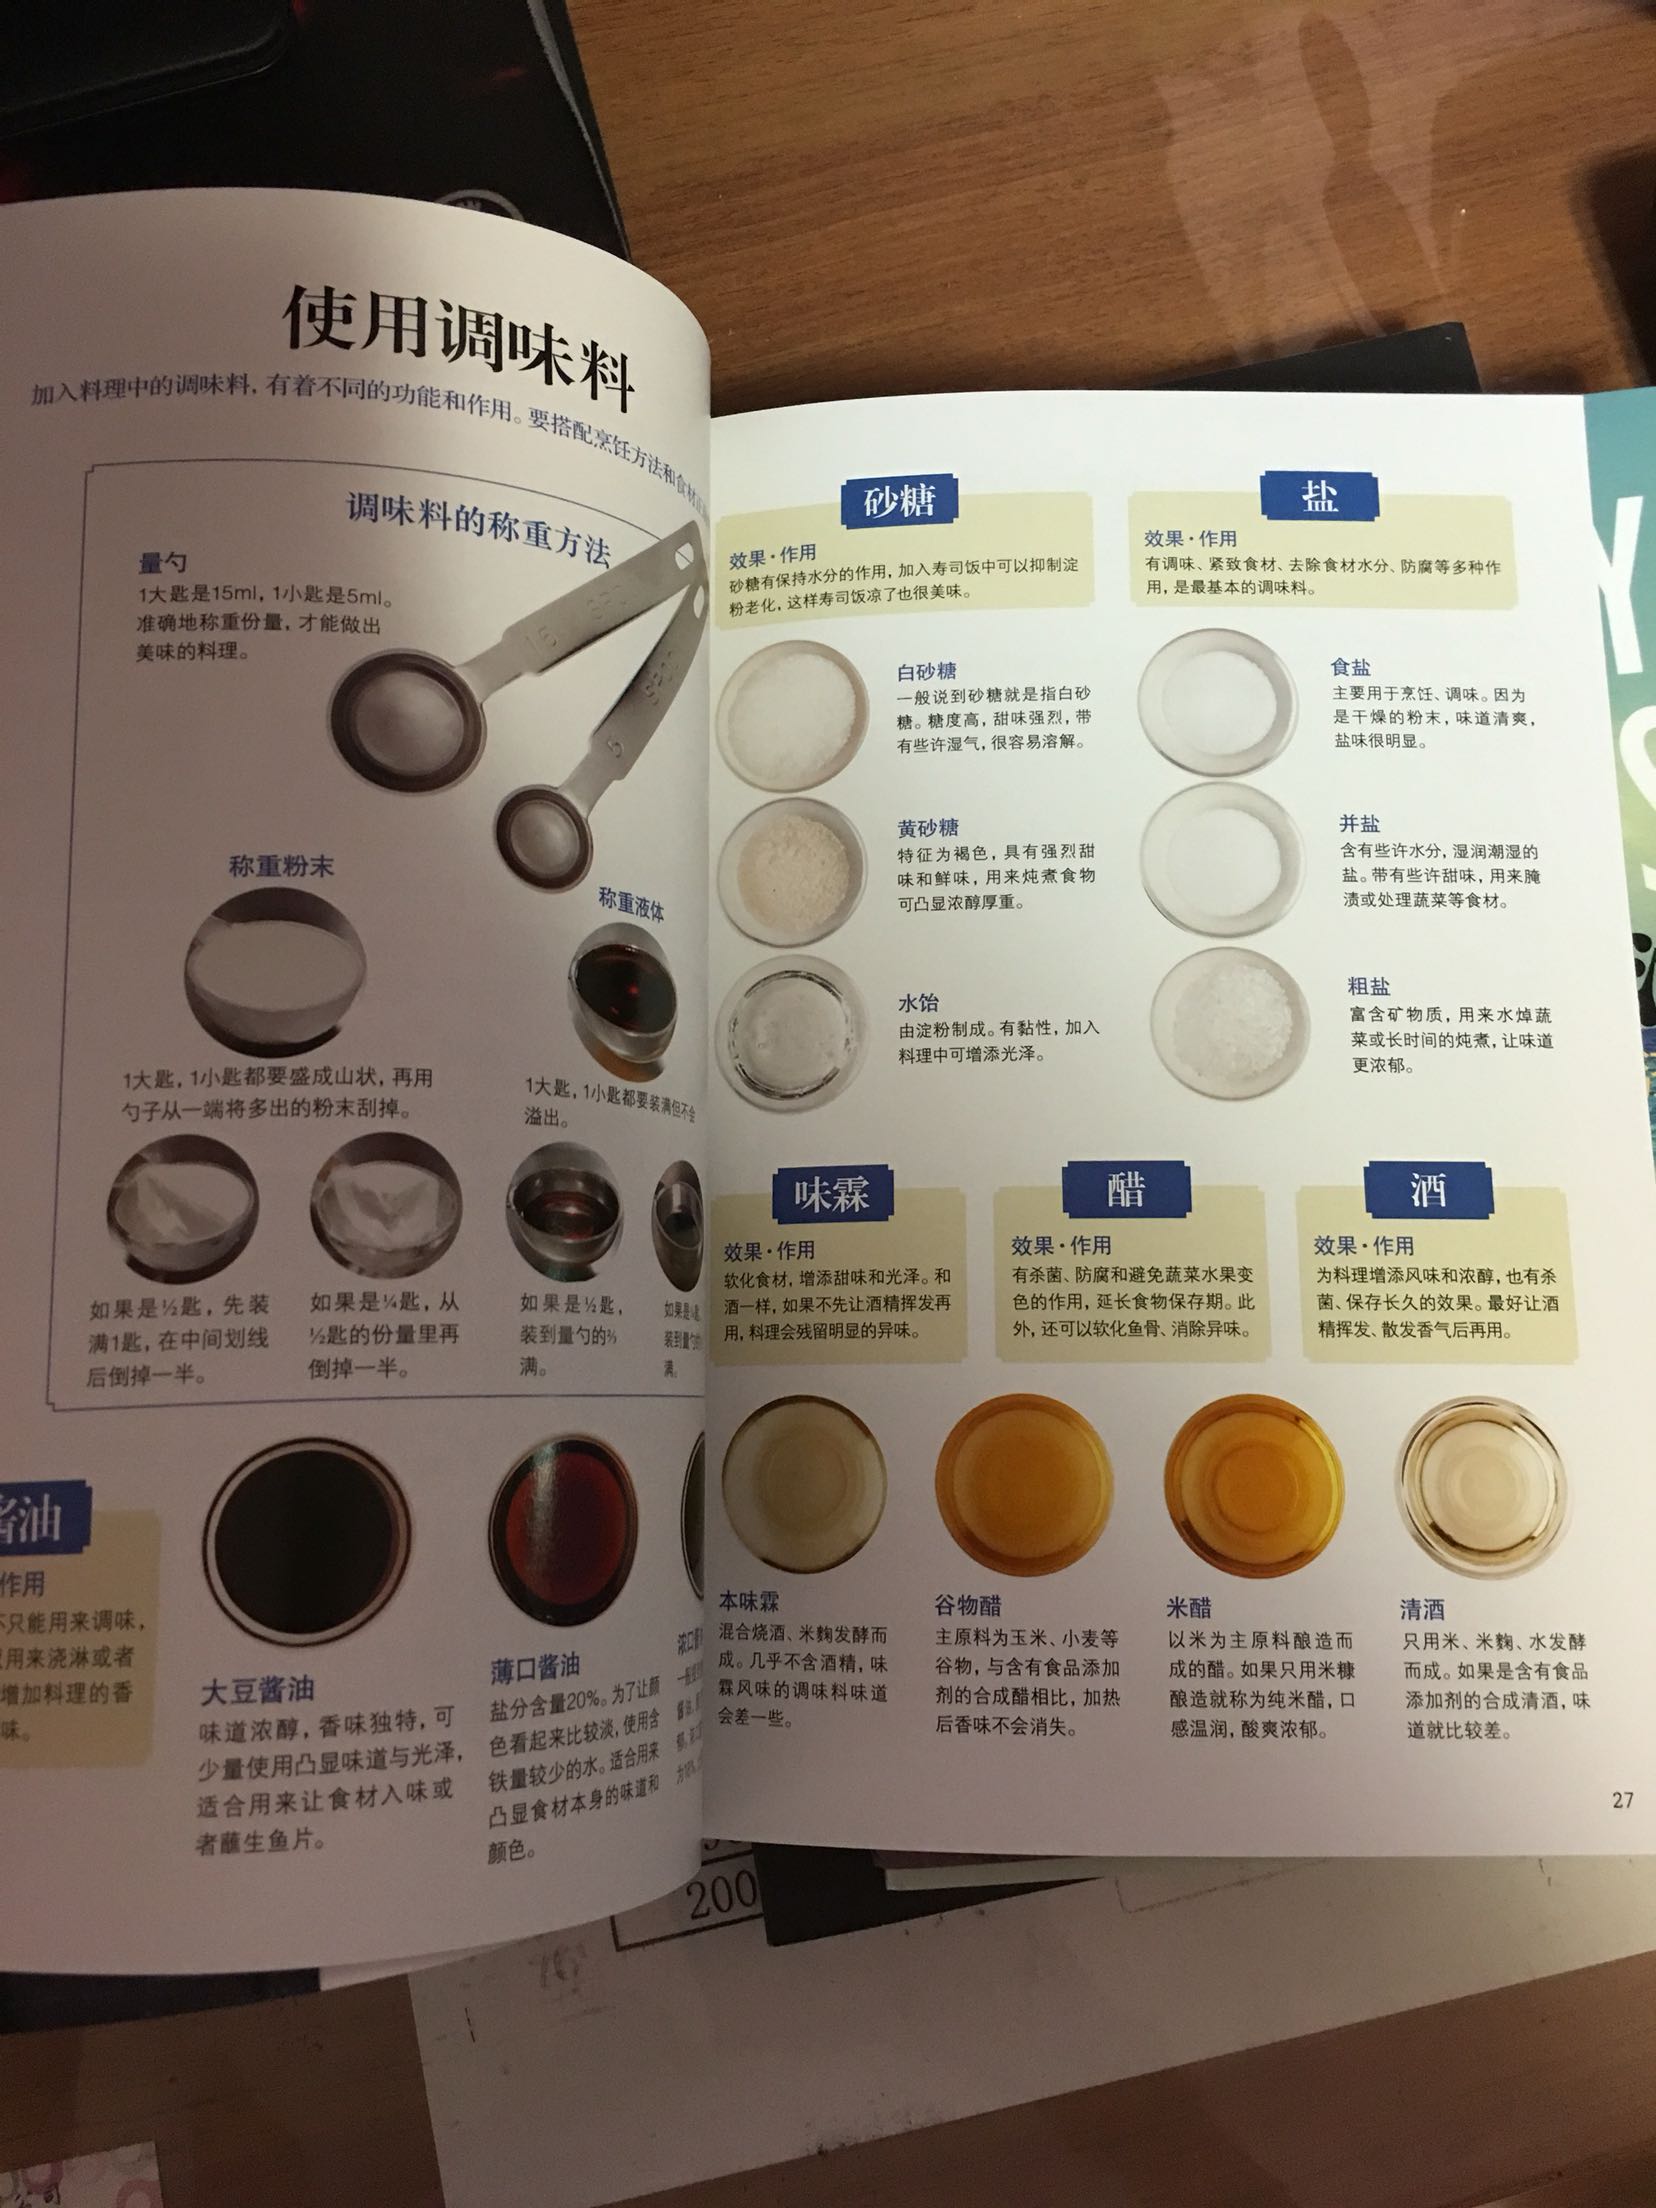 书里写的真细致，工具、调料、菜种类都写得很到位，为什么日本料理写得这么全、好！希望中国饮食也能做成如此细节的描绘！整体评，书材质好、清晰，很赞！